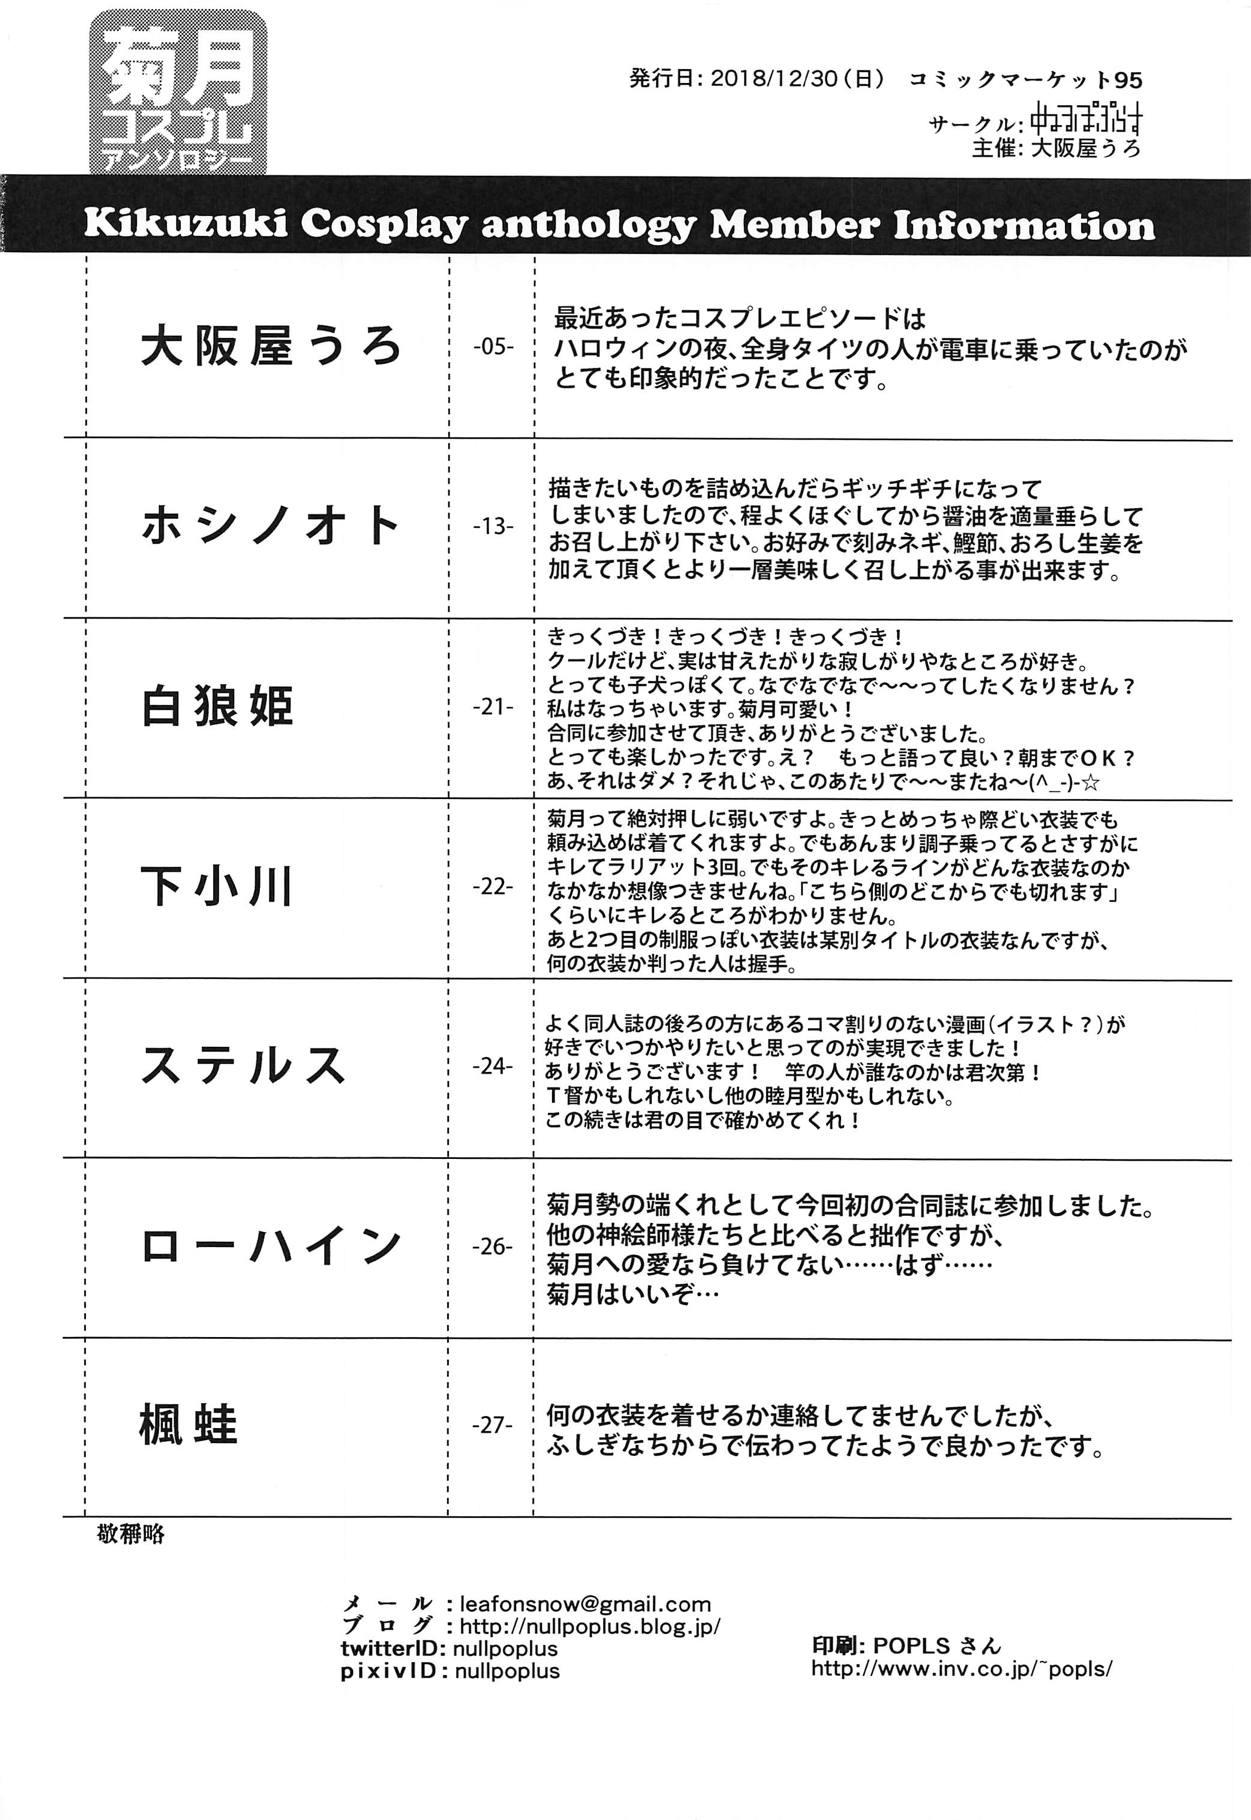 Kikuzuki Cosplay Anthology 36